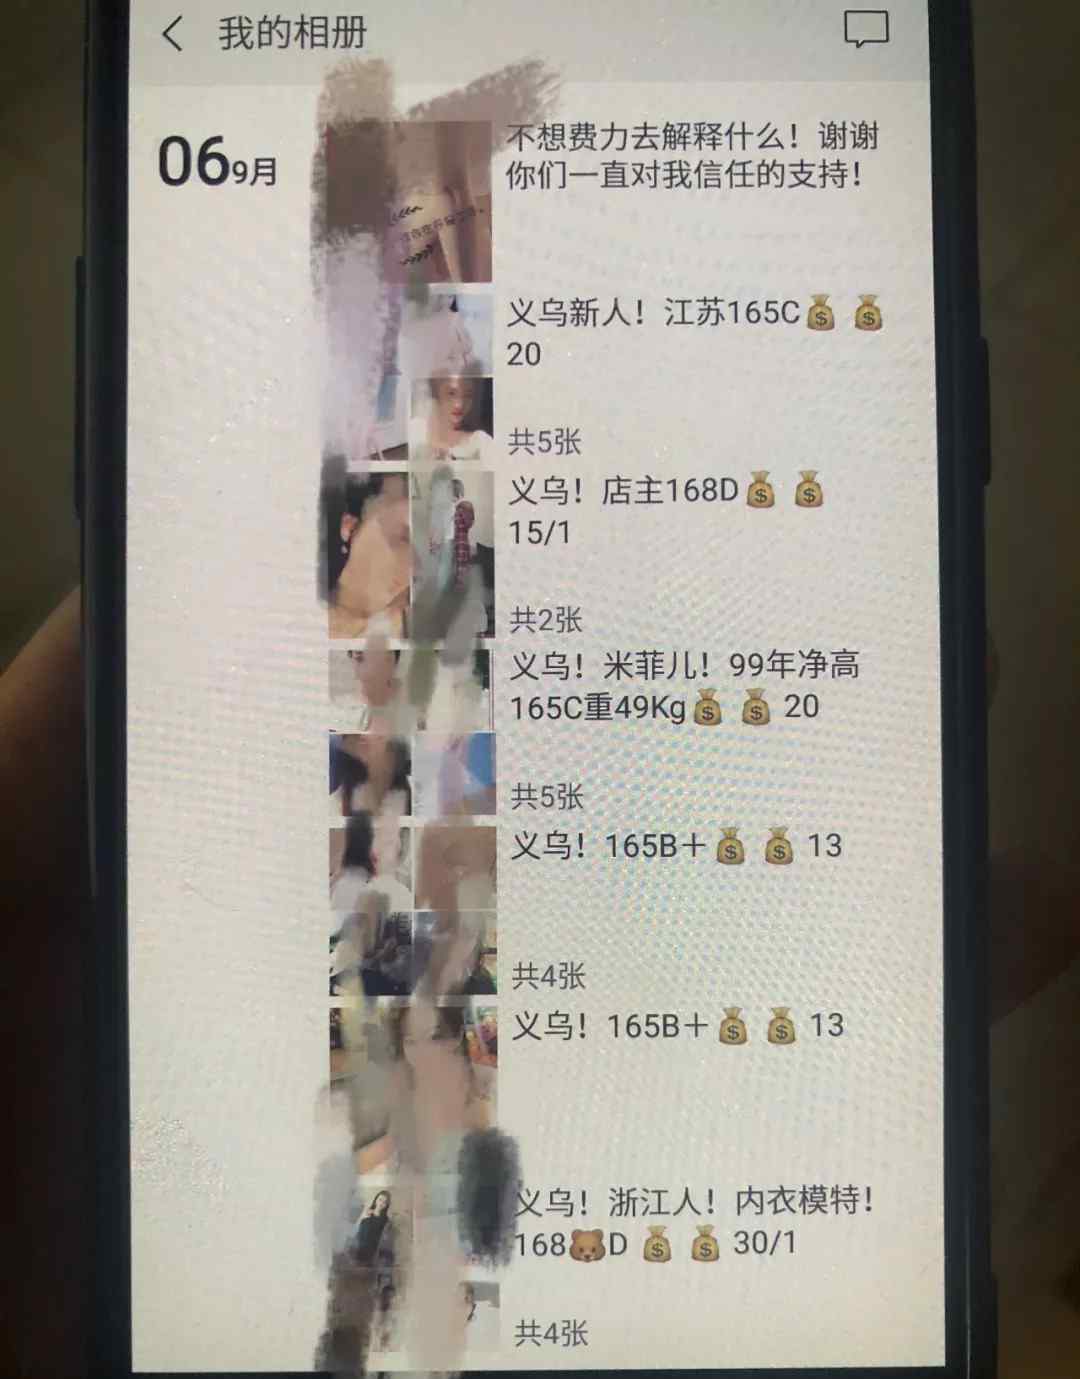 义乌市警察严厉打击掉一个借助微信发朋友圈开展组织卖淫主题活动